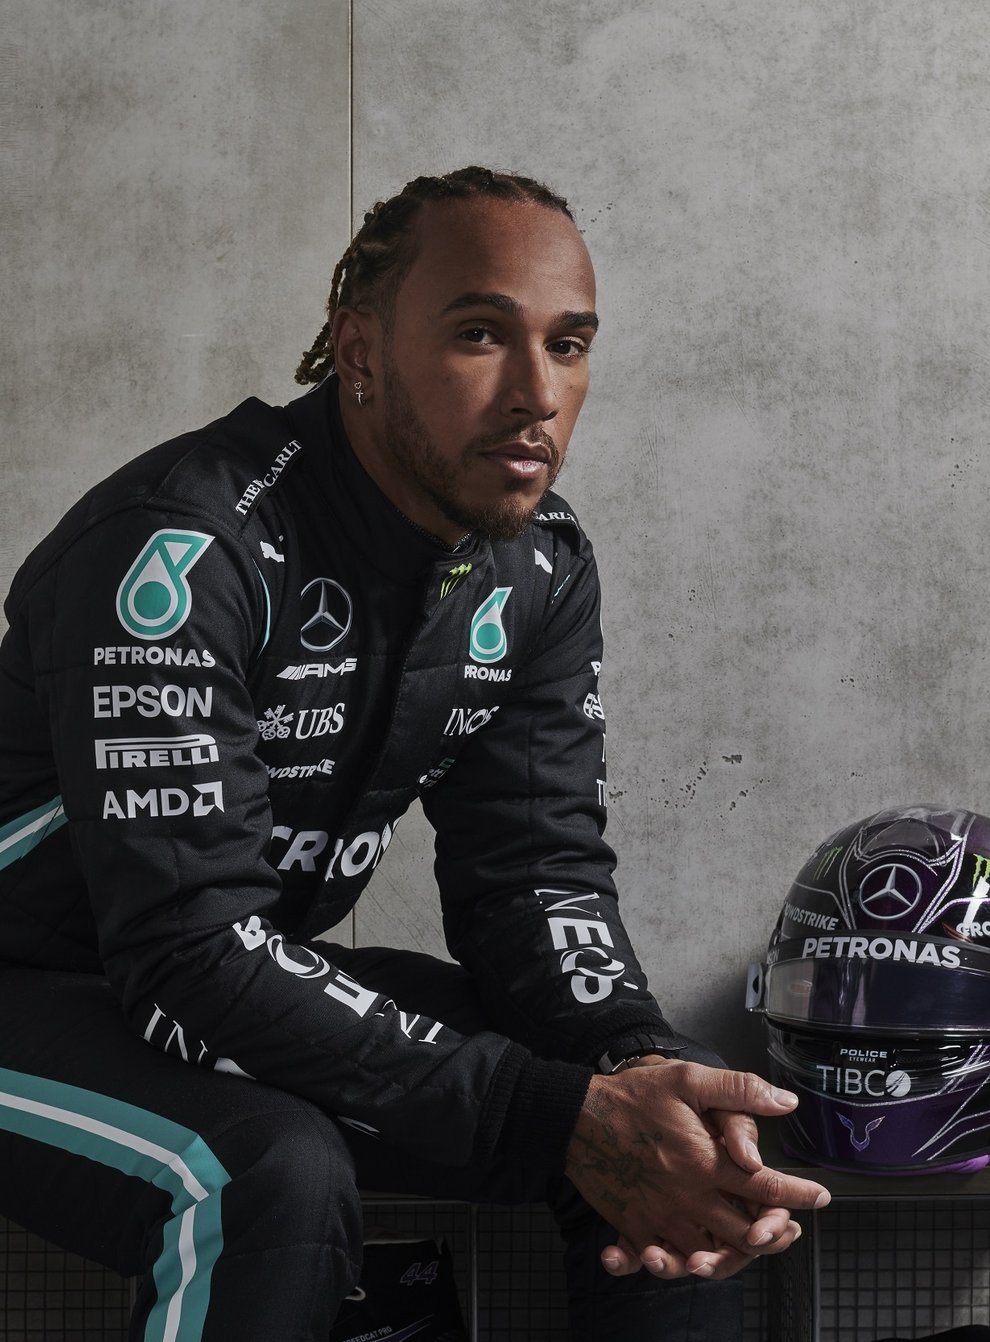 Lewis Hamilton in a photoshoot